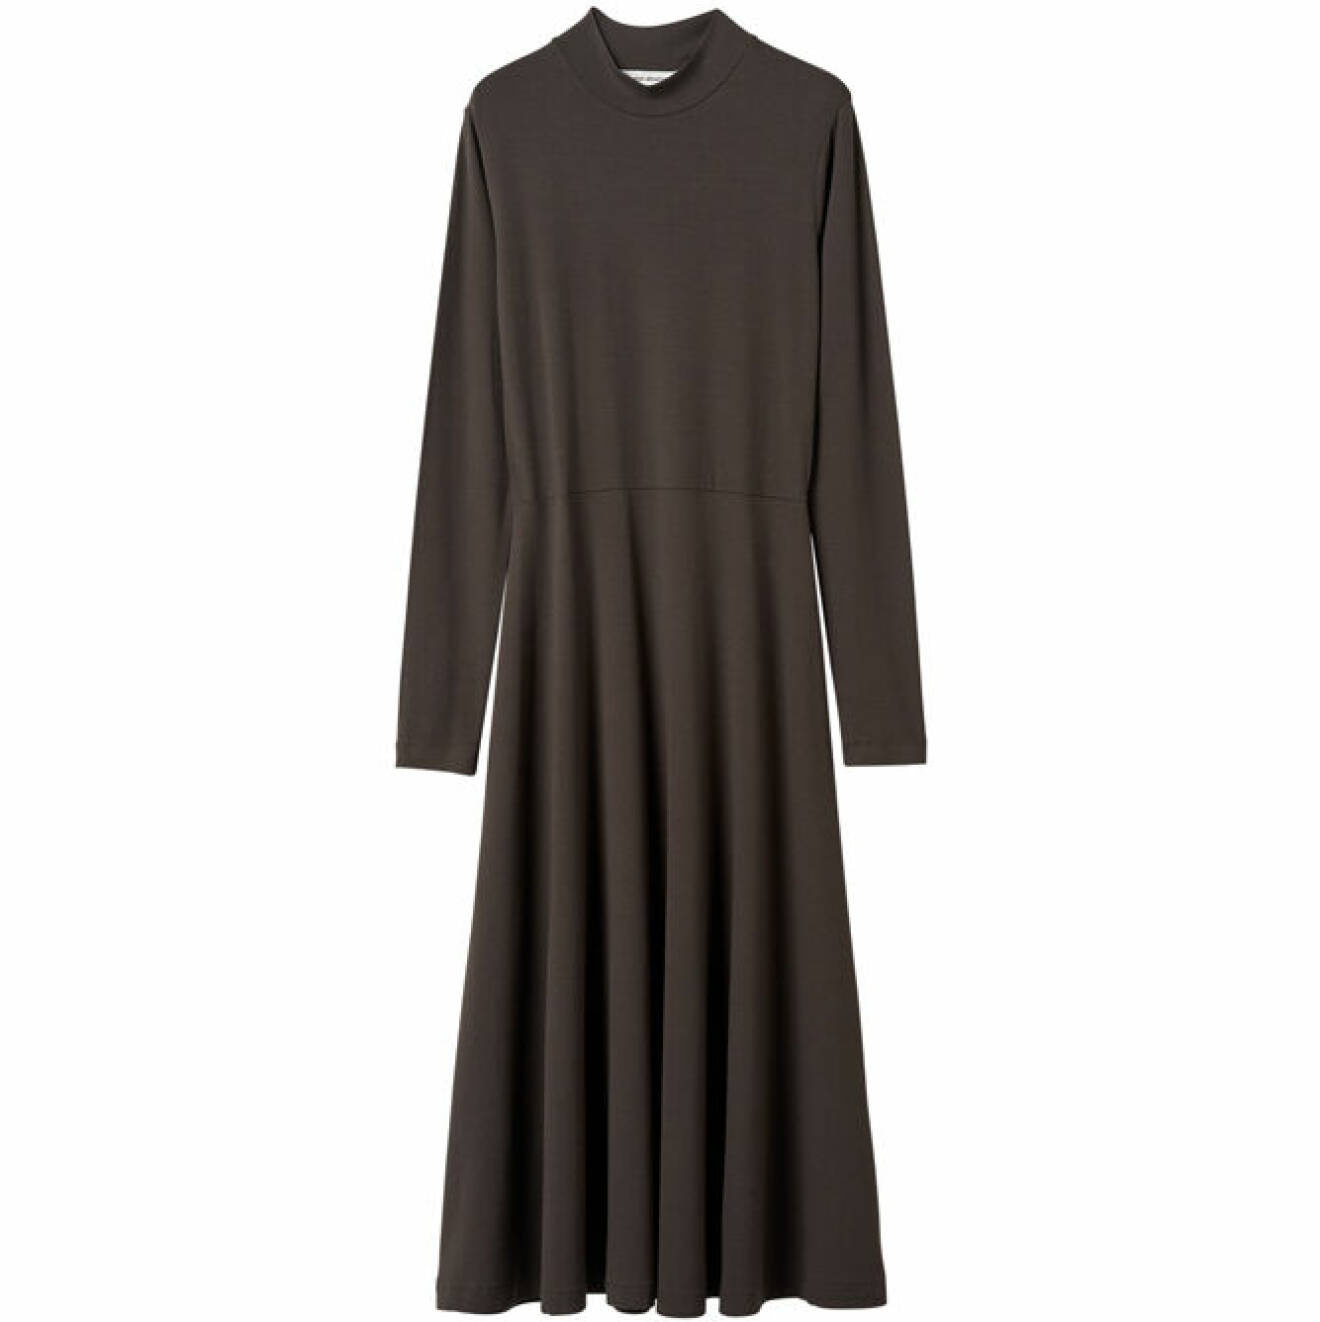 långärmad mörkbrun klänning till basgarderob